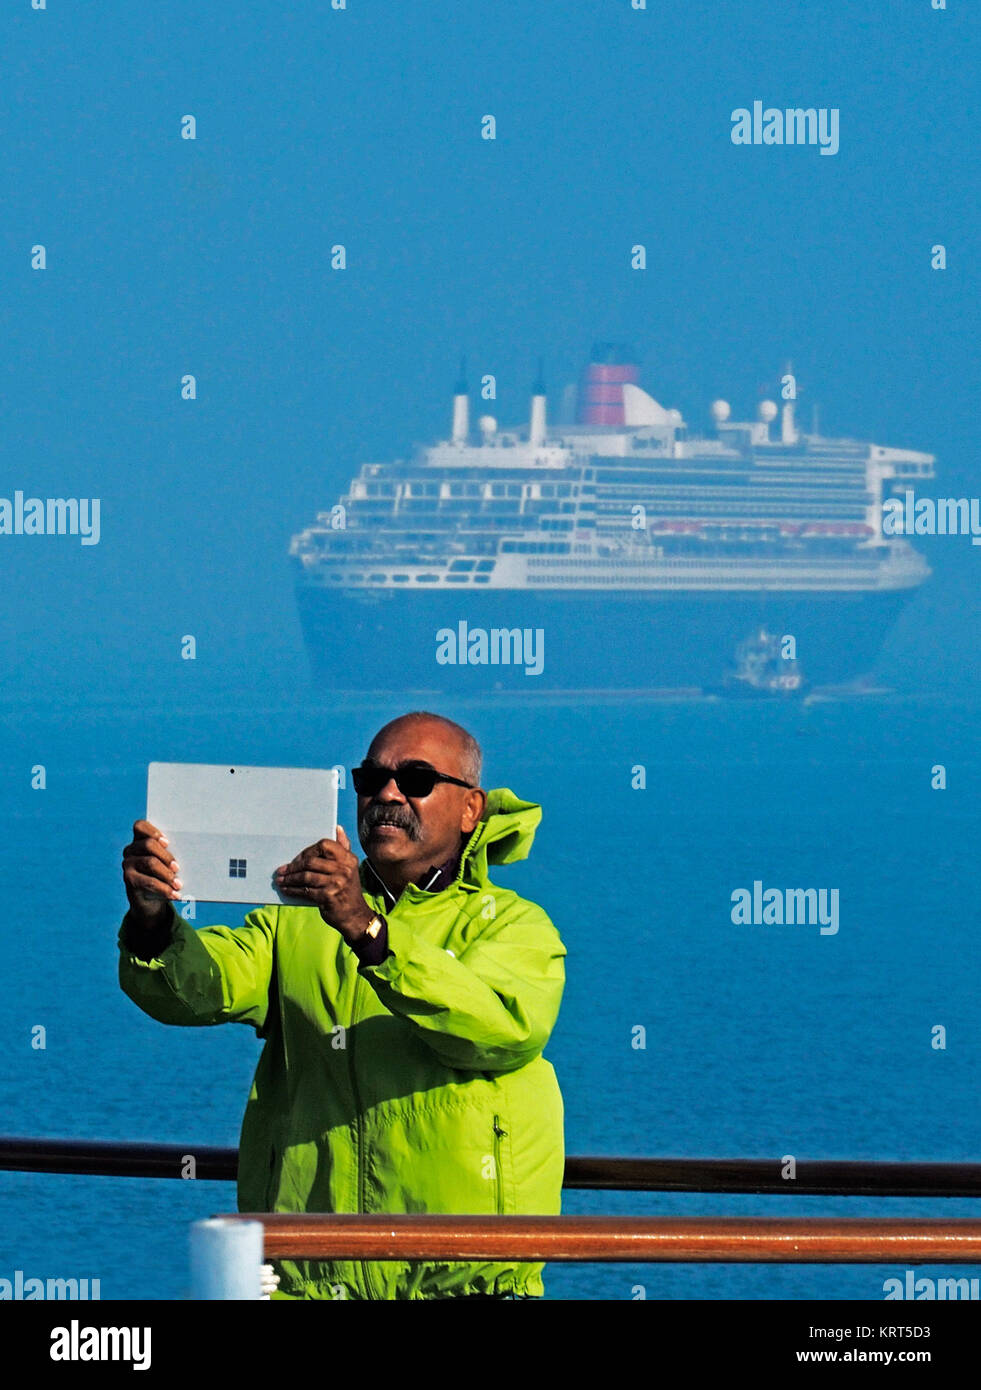 Pasajero de Celebrity Constellation haciendo selfie con Queen Mary 2 en el Canal de Suez. Foto de stock